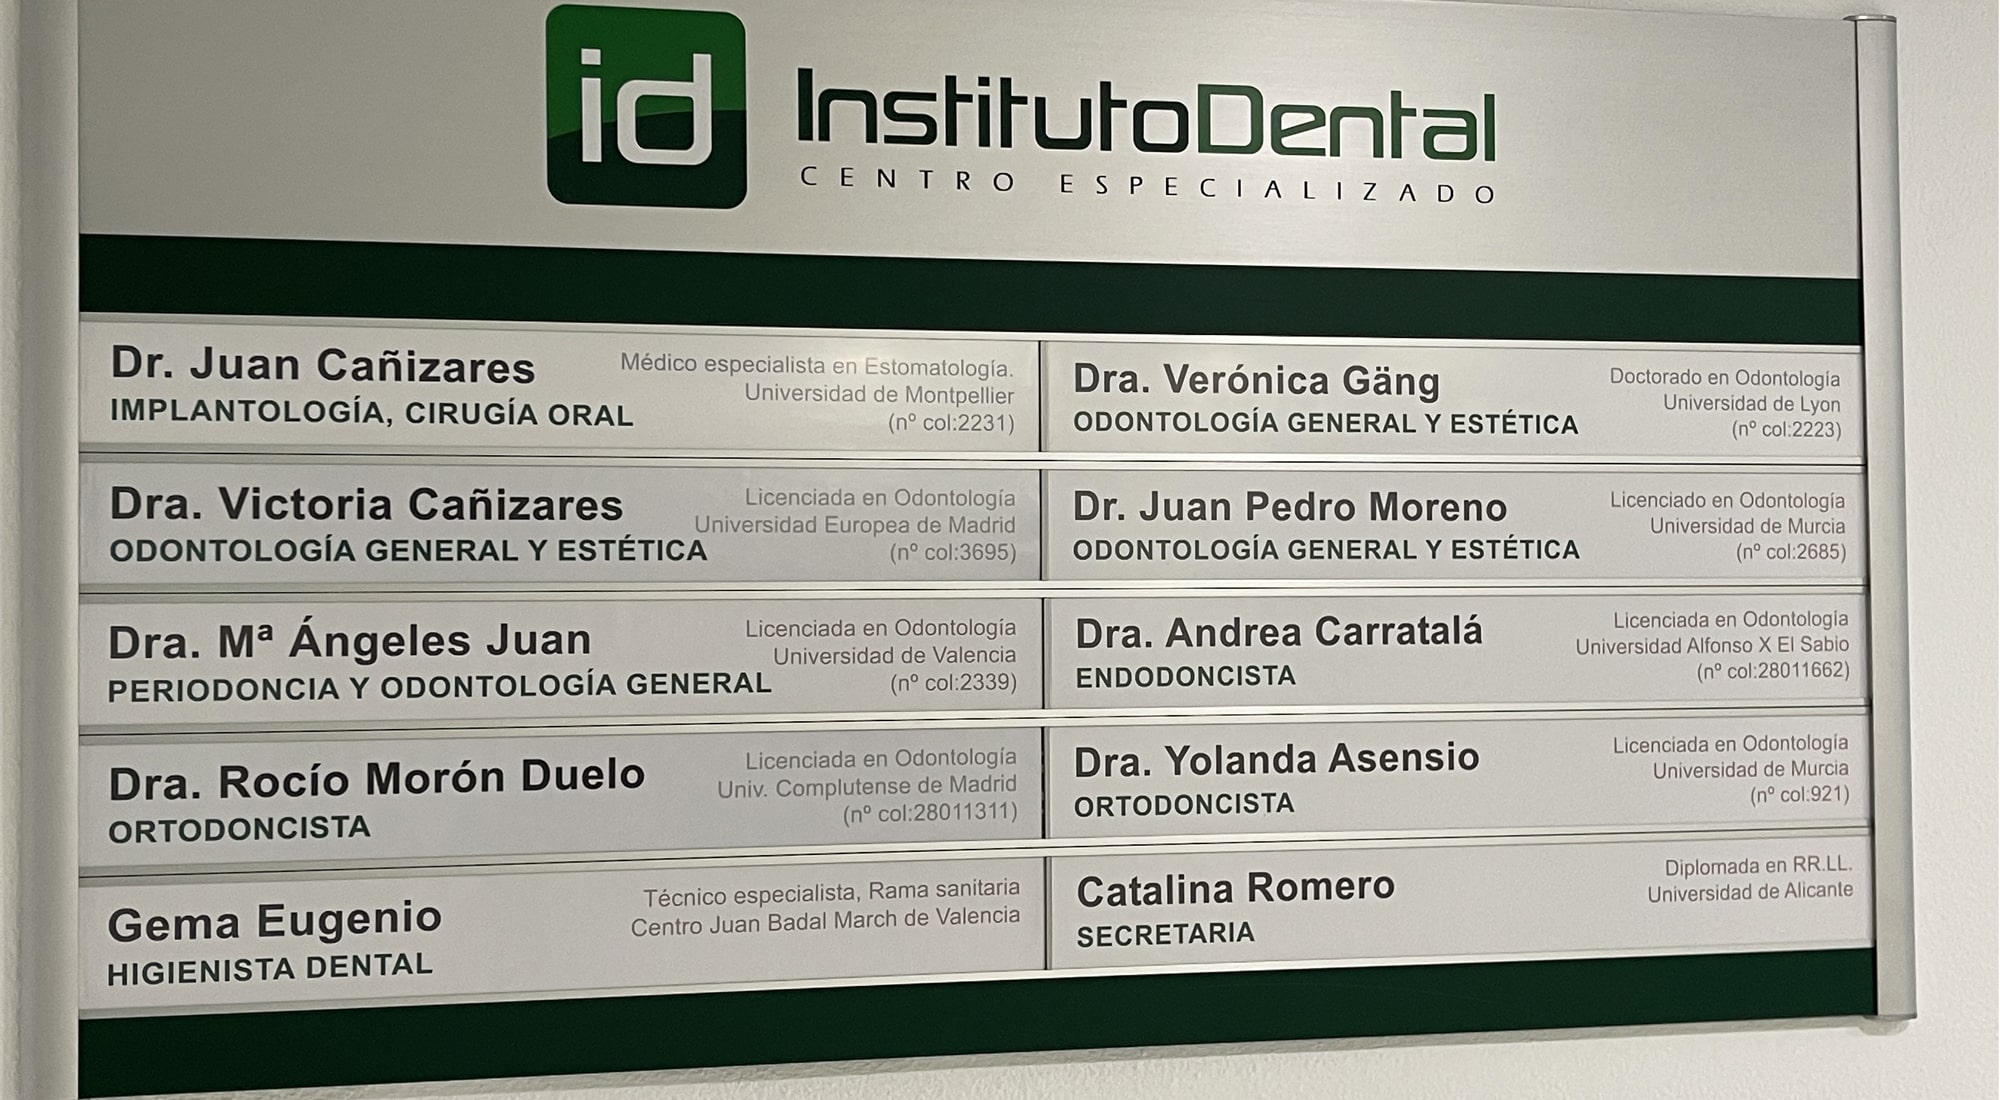 Les spécialistes chez Instituto Dental